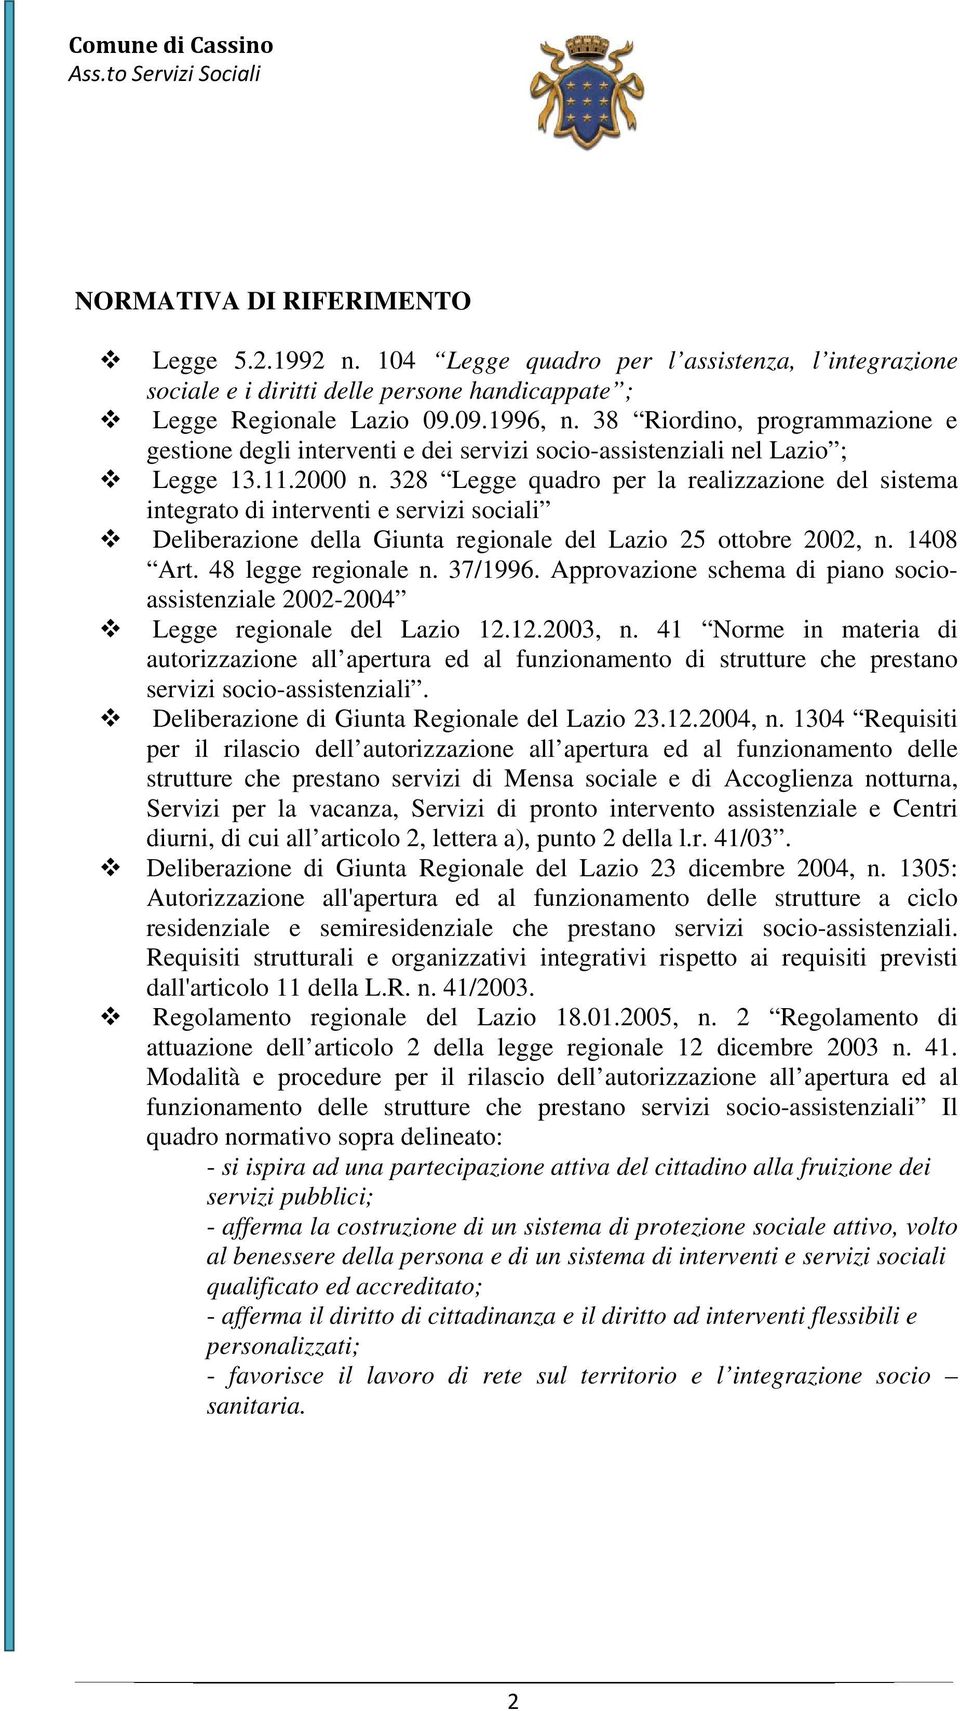 328 Legge quadro per la realizzazione del sistema integrato di interventi e servizi sociali Deliberazione della Giunta regionale del Lazio 25 ottobre 2002, n. 1408 Art. 48 legge regionale n. 37/1996.